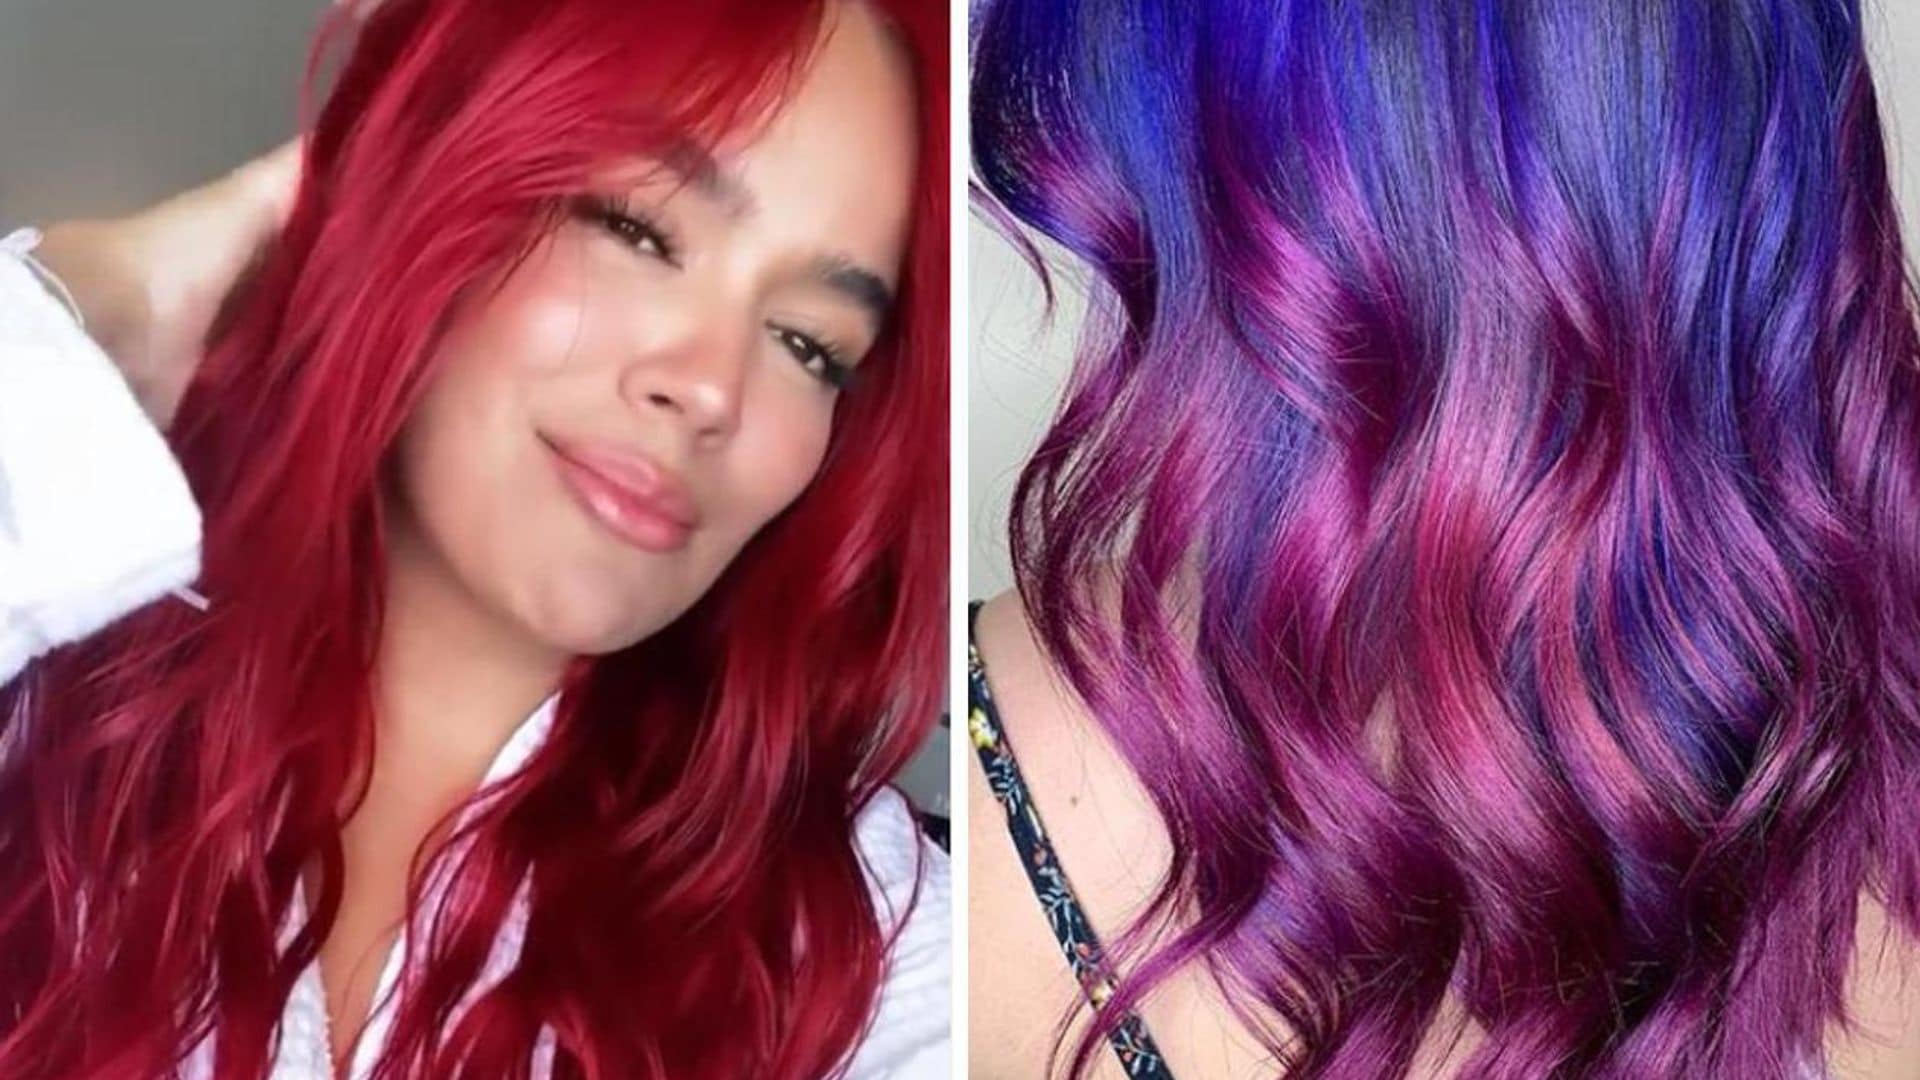 Los cuidados que debes tener si quieres pintar tu cabello de colores vibrantes como Karol G o Rosalía